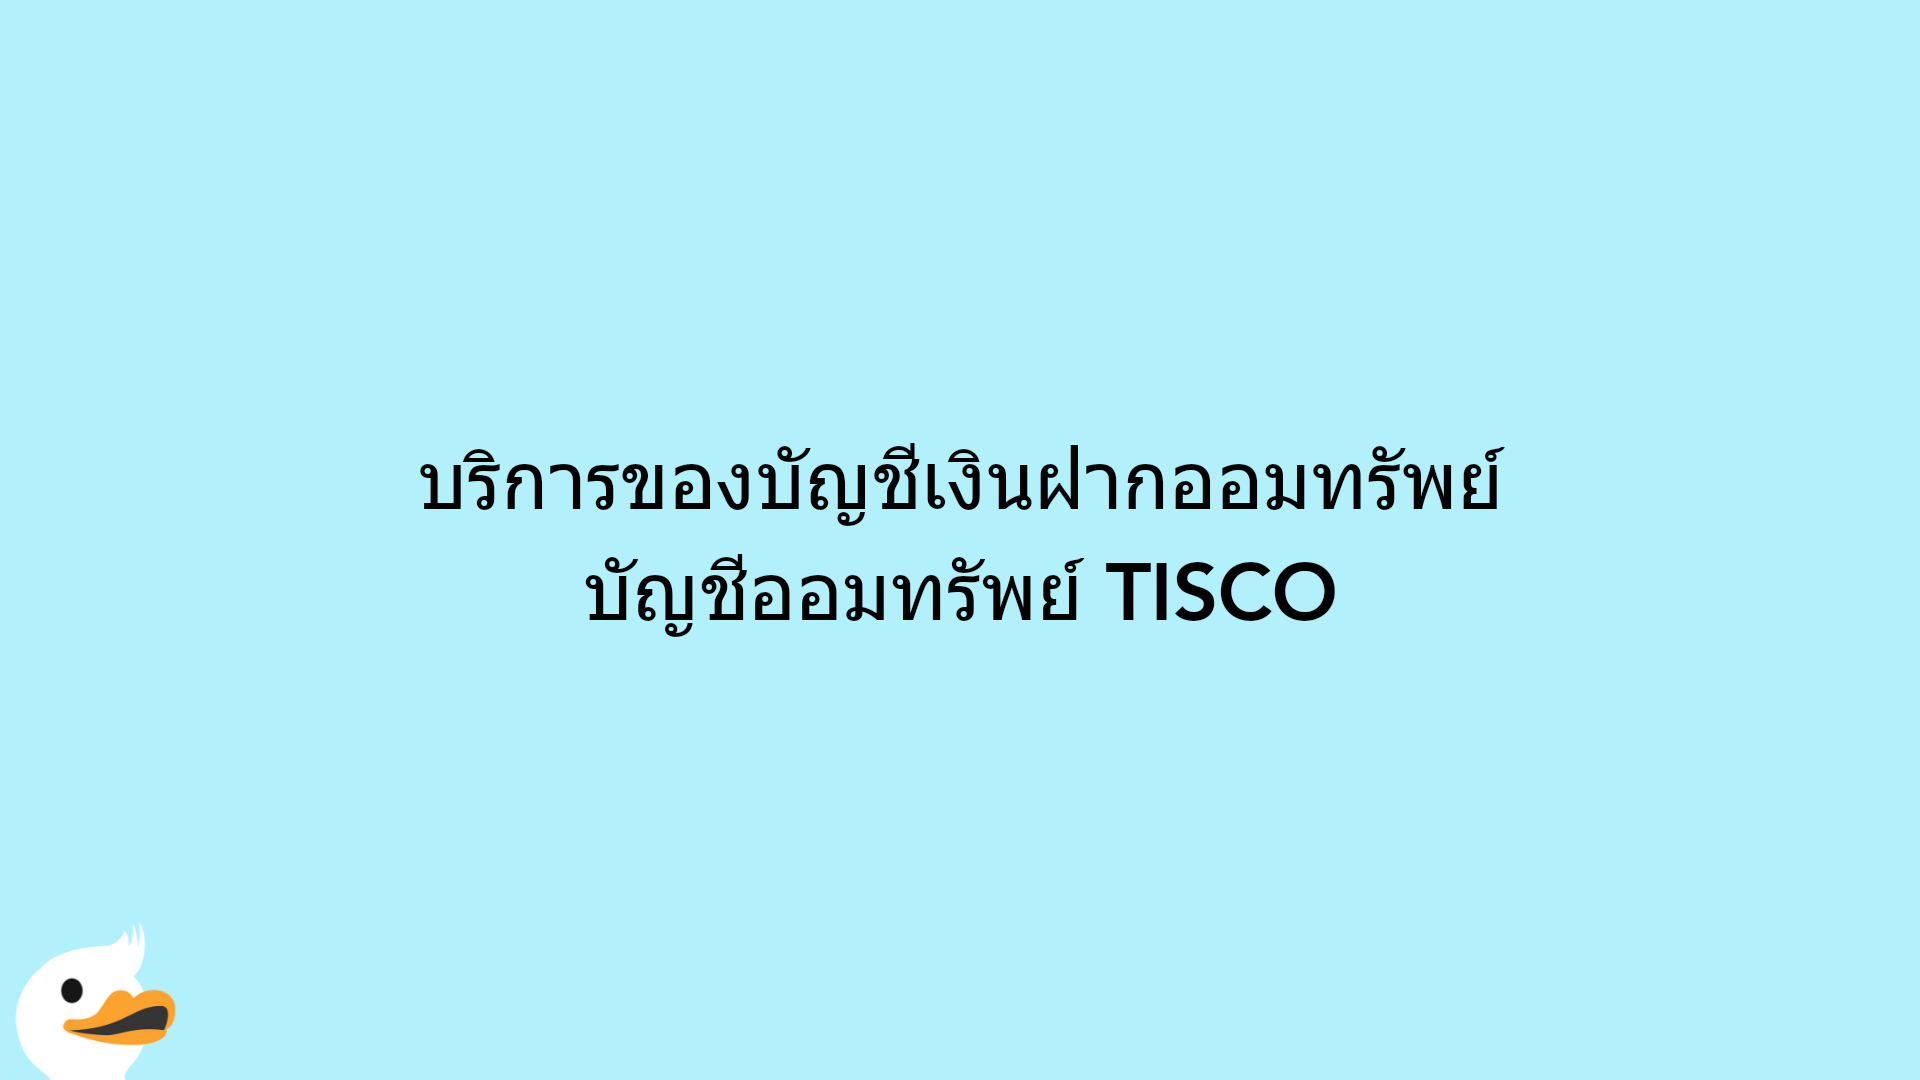 บริการของบัญชีเงินฝากออมทรัพย์ บัญชีออมทรัพย์ TISCO